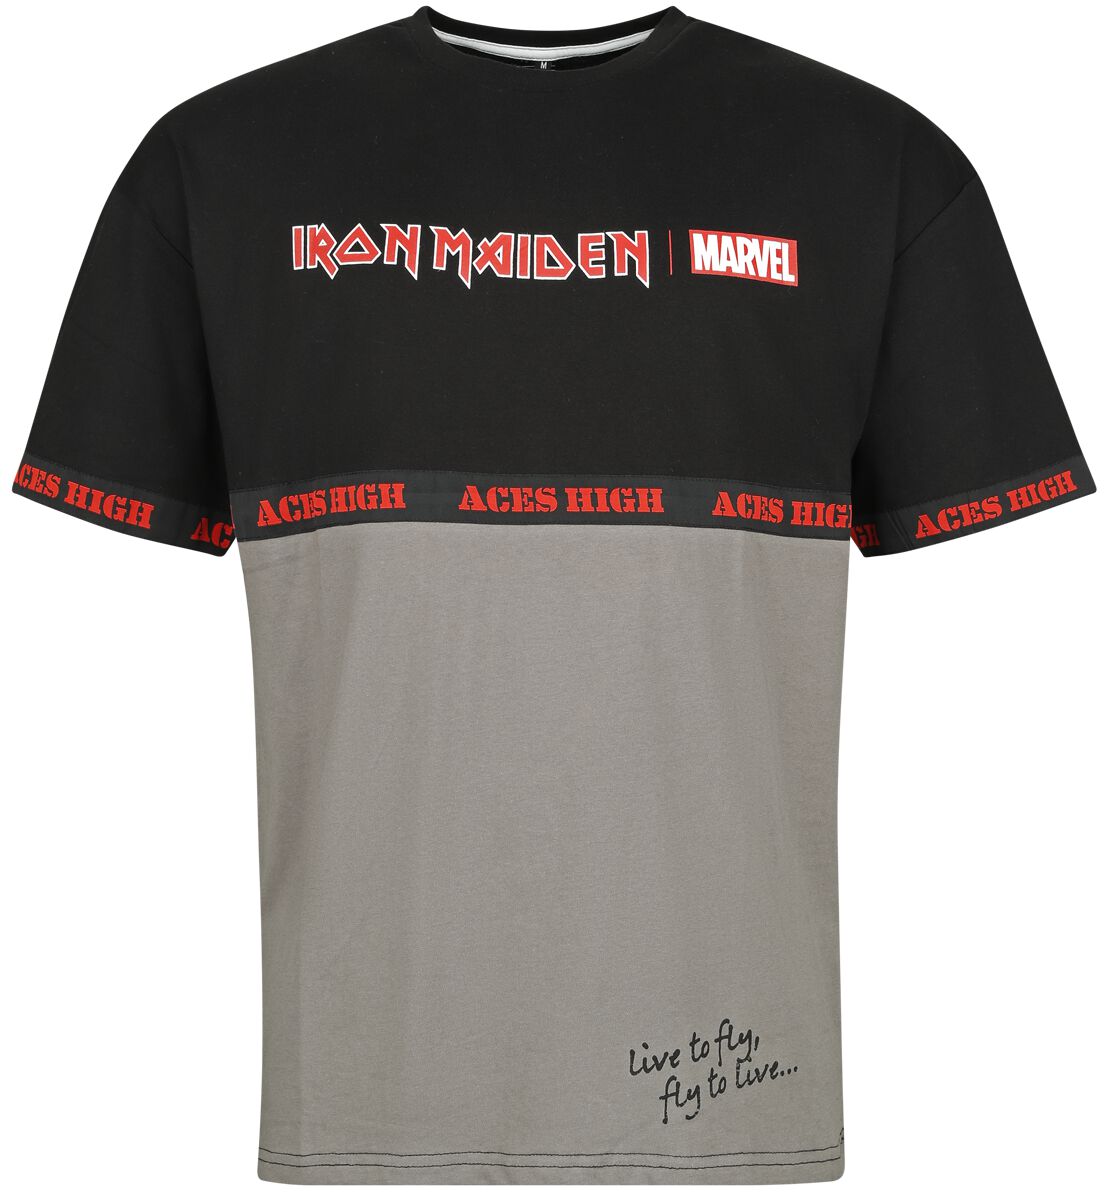 Iron Maiden Iron Maiden x Marvel Collection - Aces High War Machine T-Shirt schwarz grau in S